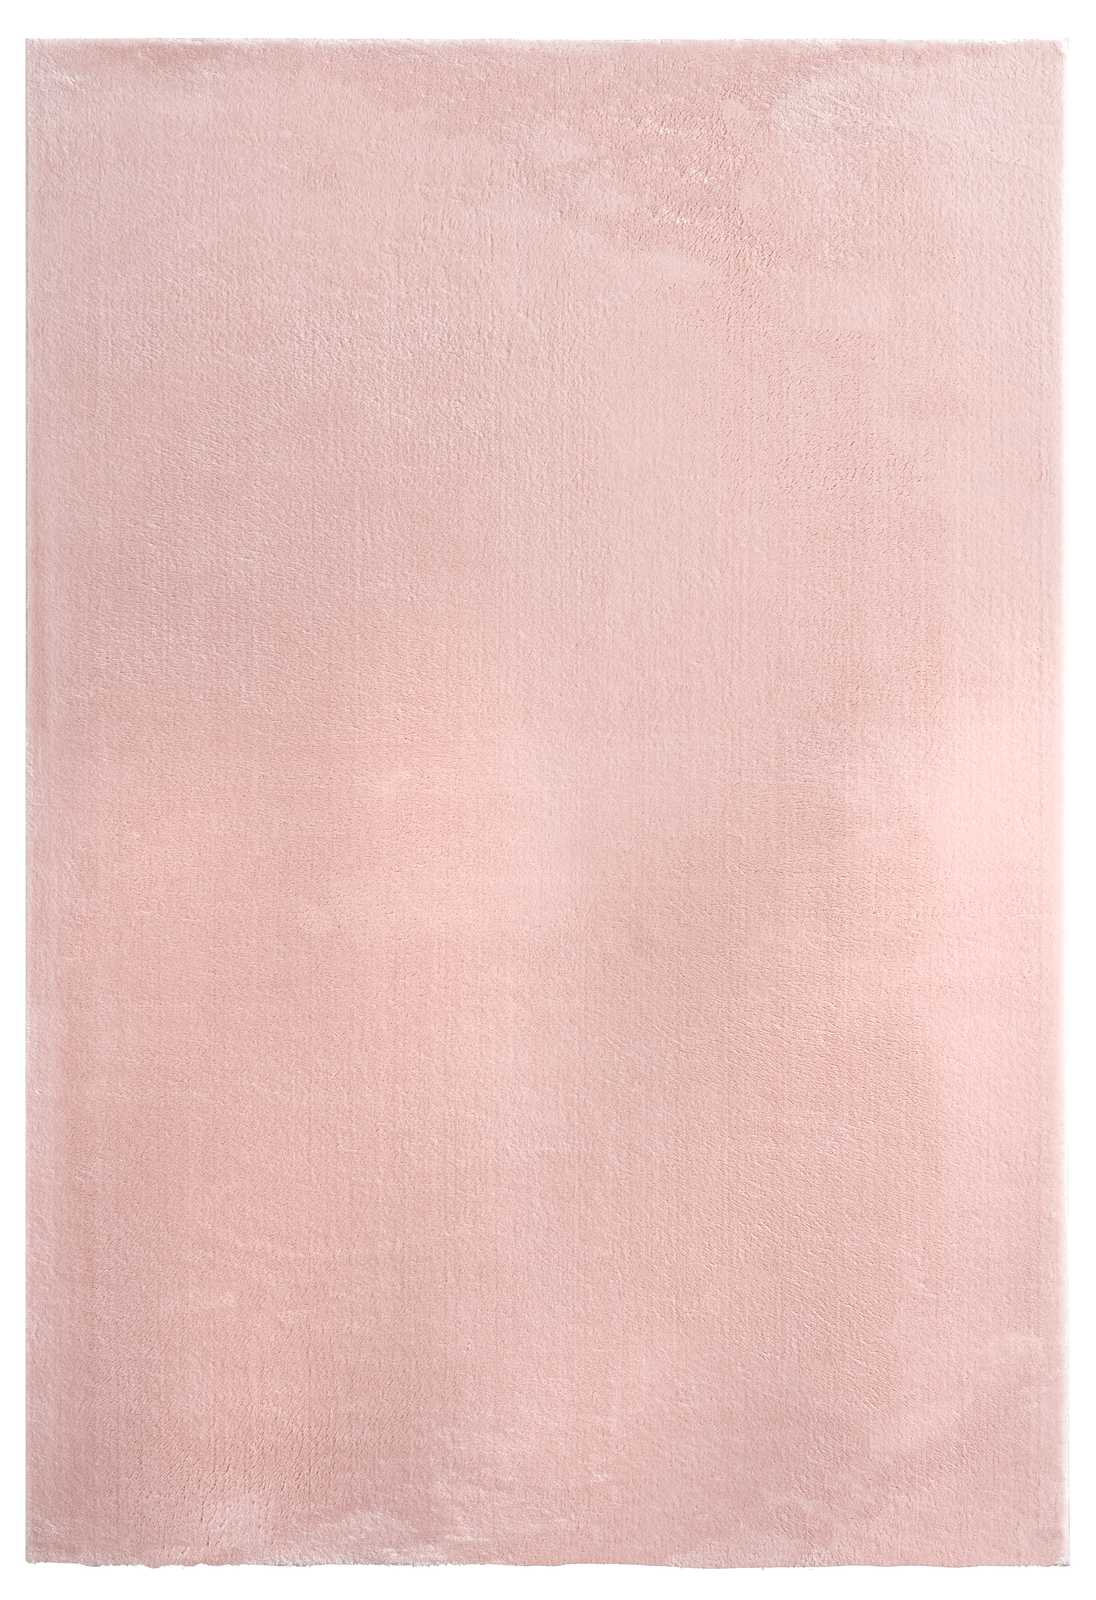             Tapis rose à poils longs - 290 x 200 cm
        